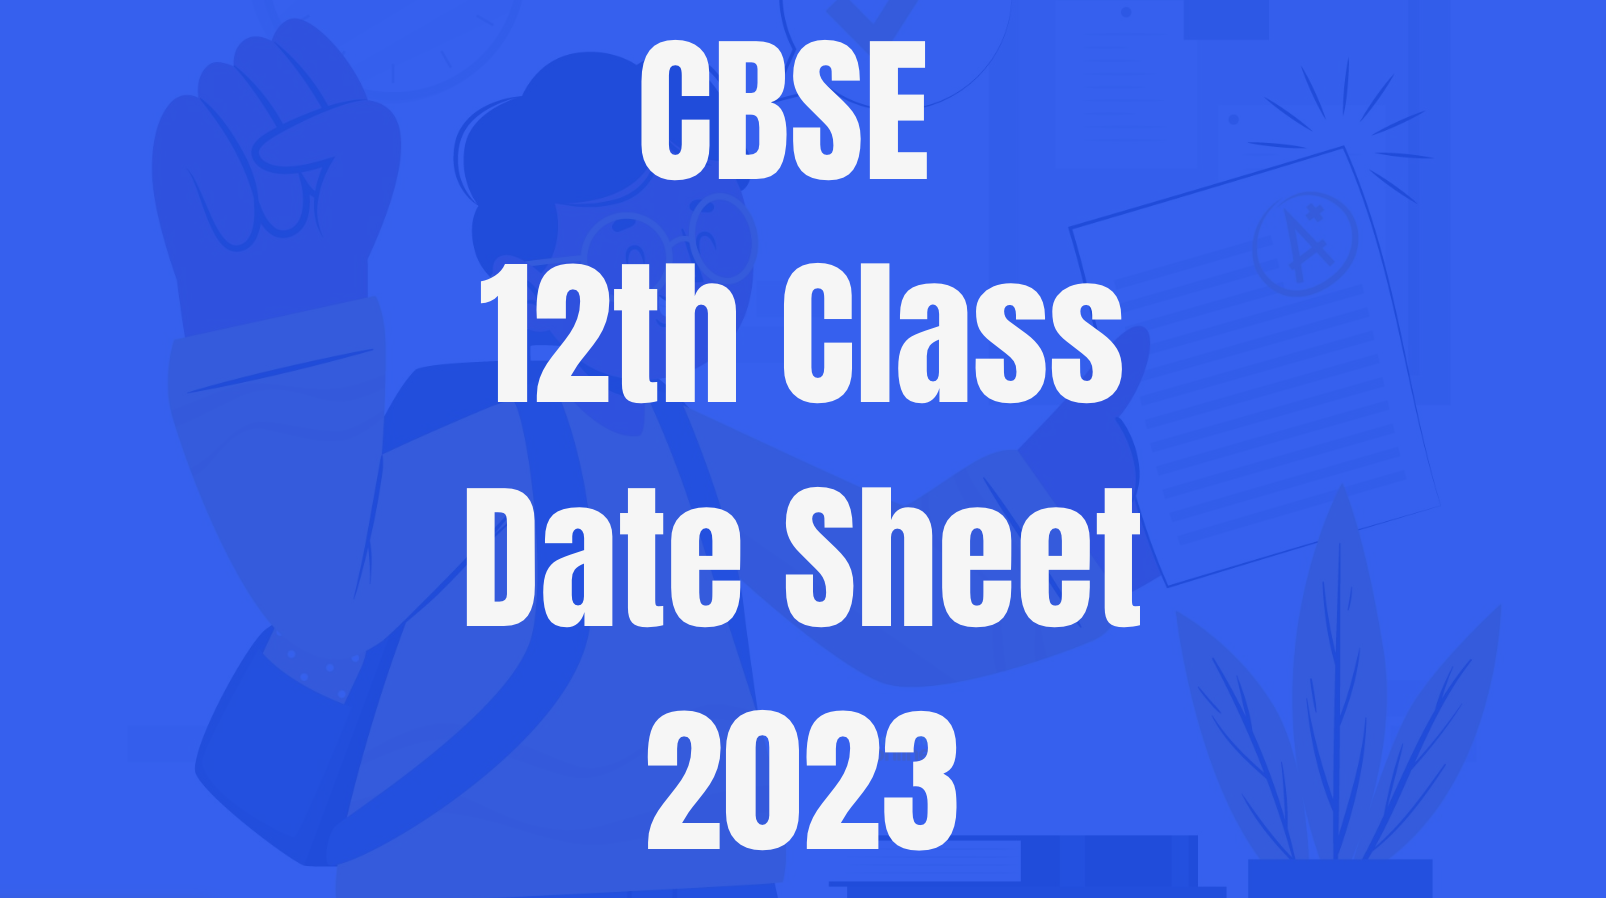 cbse date sheet 2023 class 12, cbse class 12 date sheet 2023, cbse date sheet 2023 class 12,